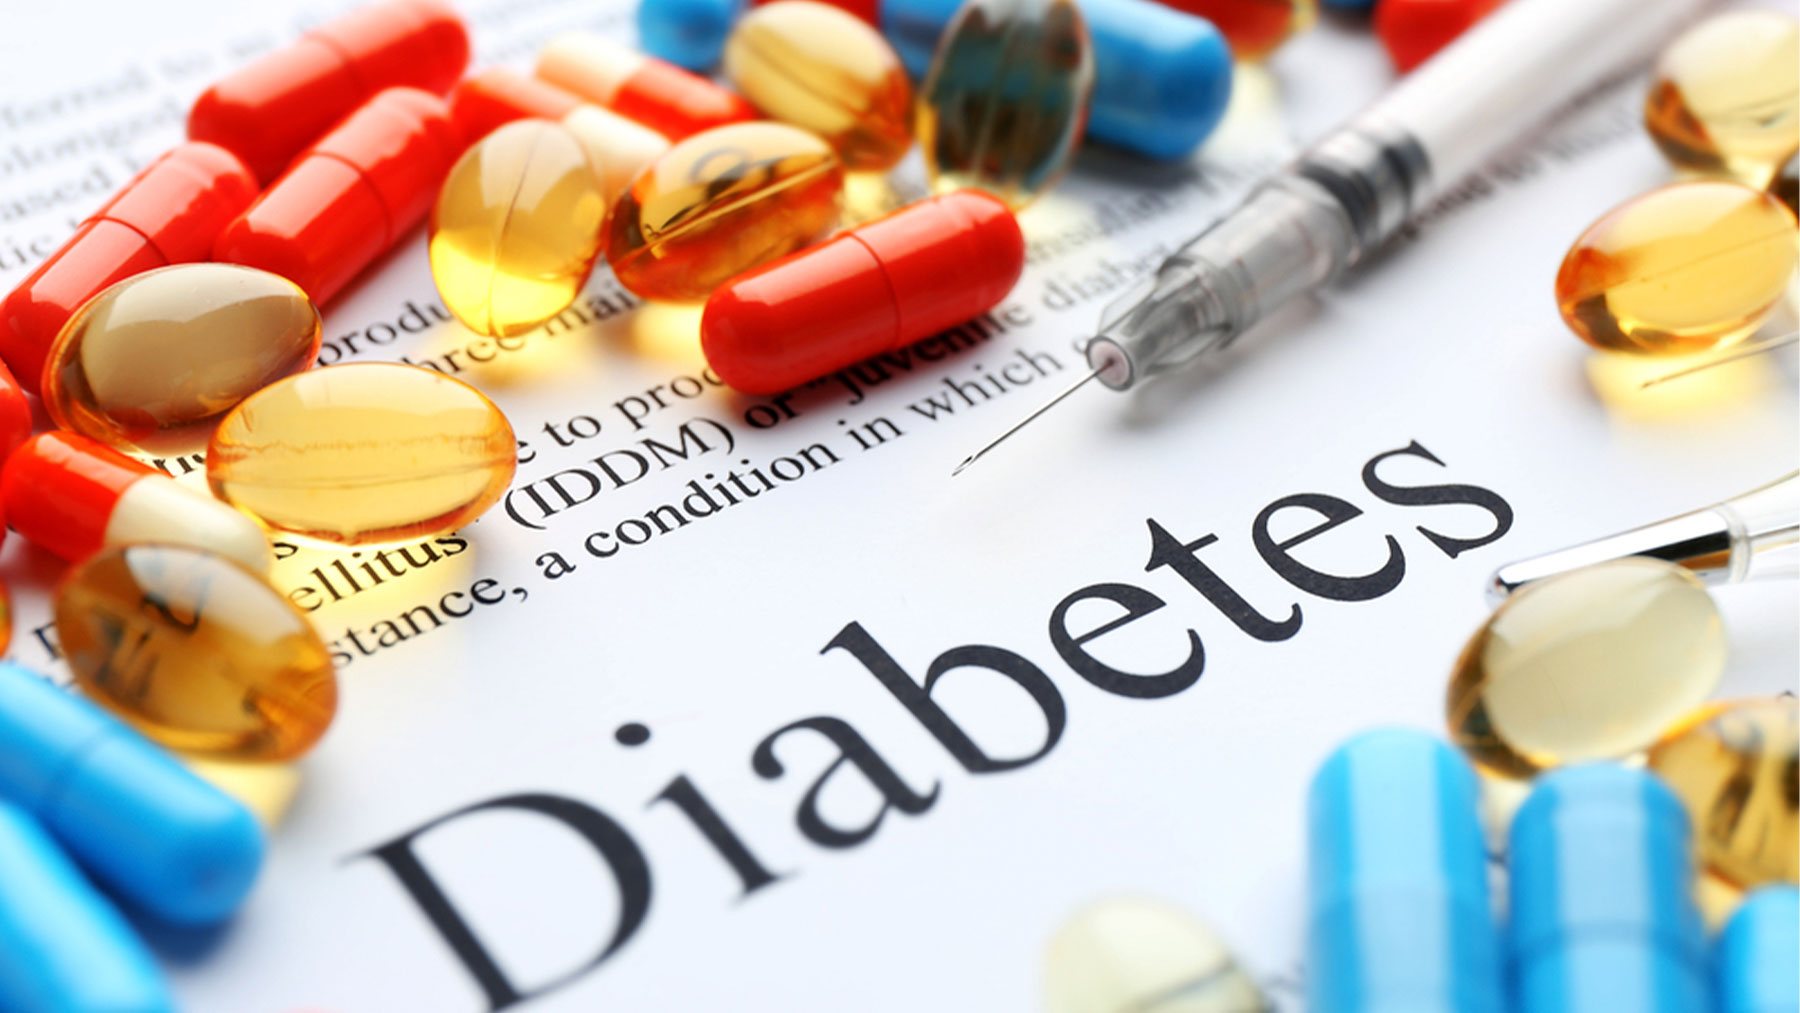 En nuestro país se estima que la diabetes afecta a más de 6 millones de personas.